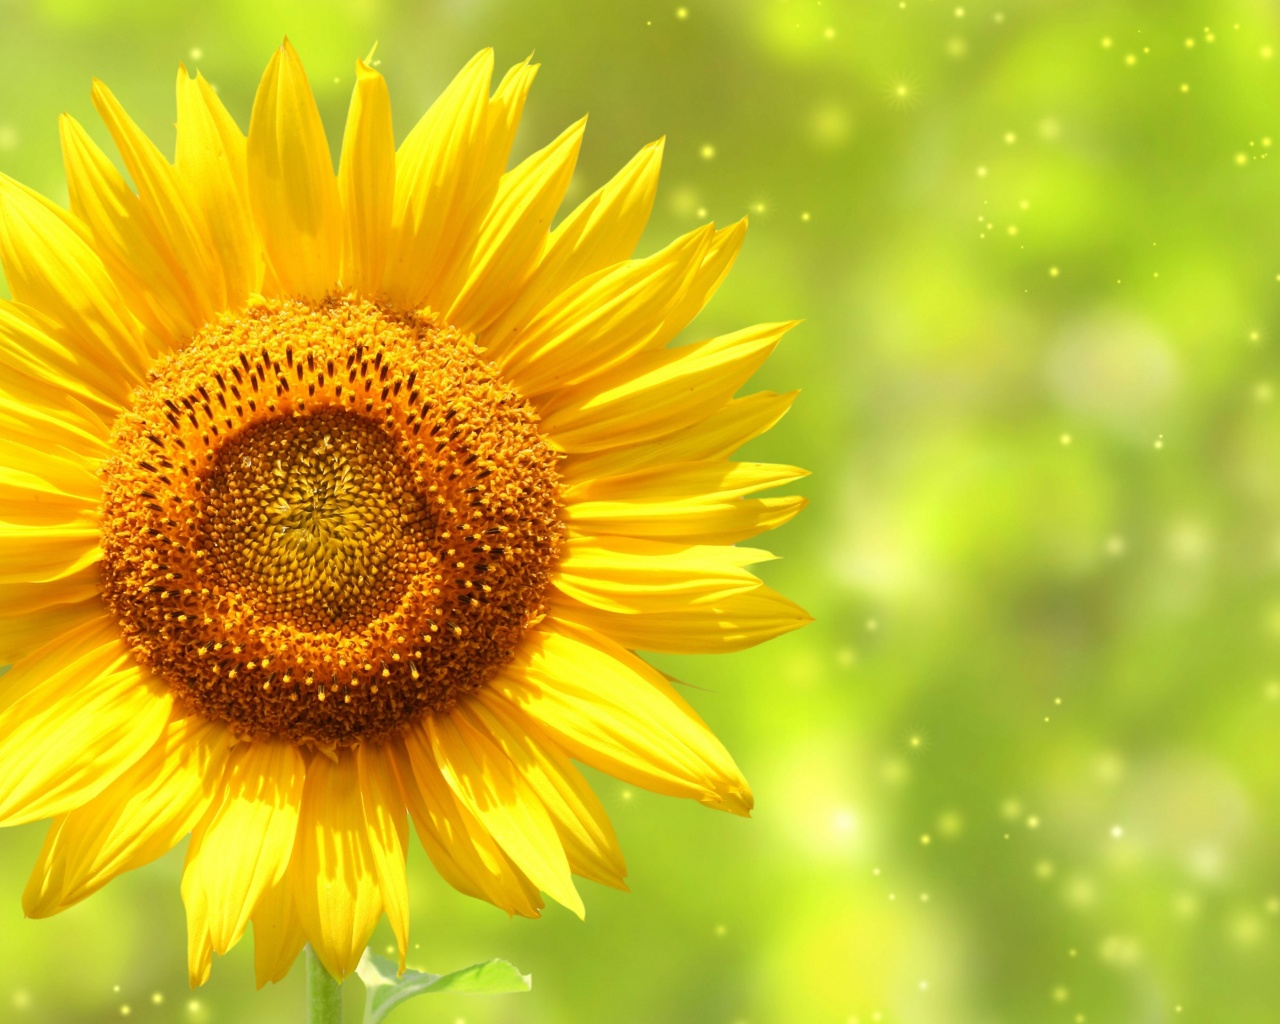 The Yellow Sunflower